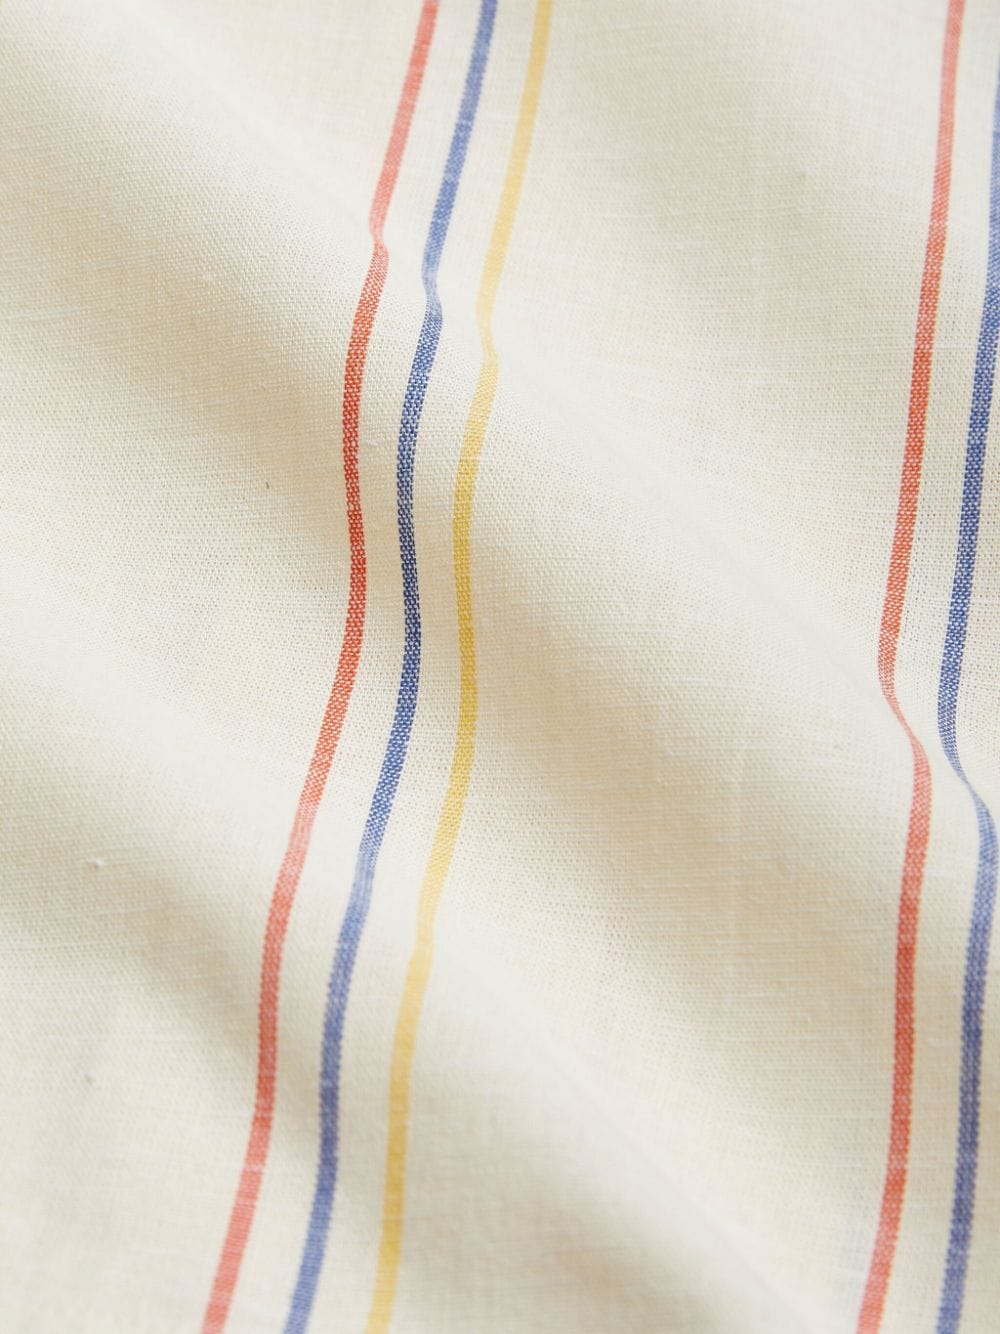 Shorts bianco avorio/multicolore bambino